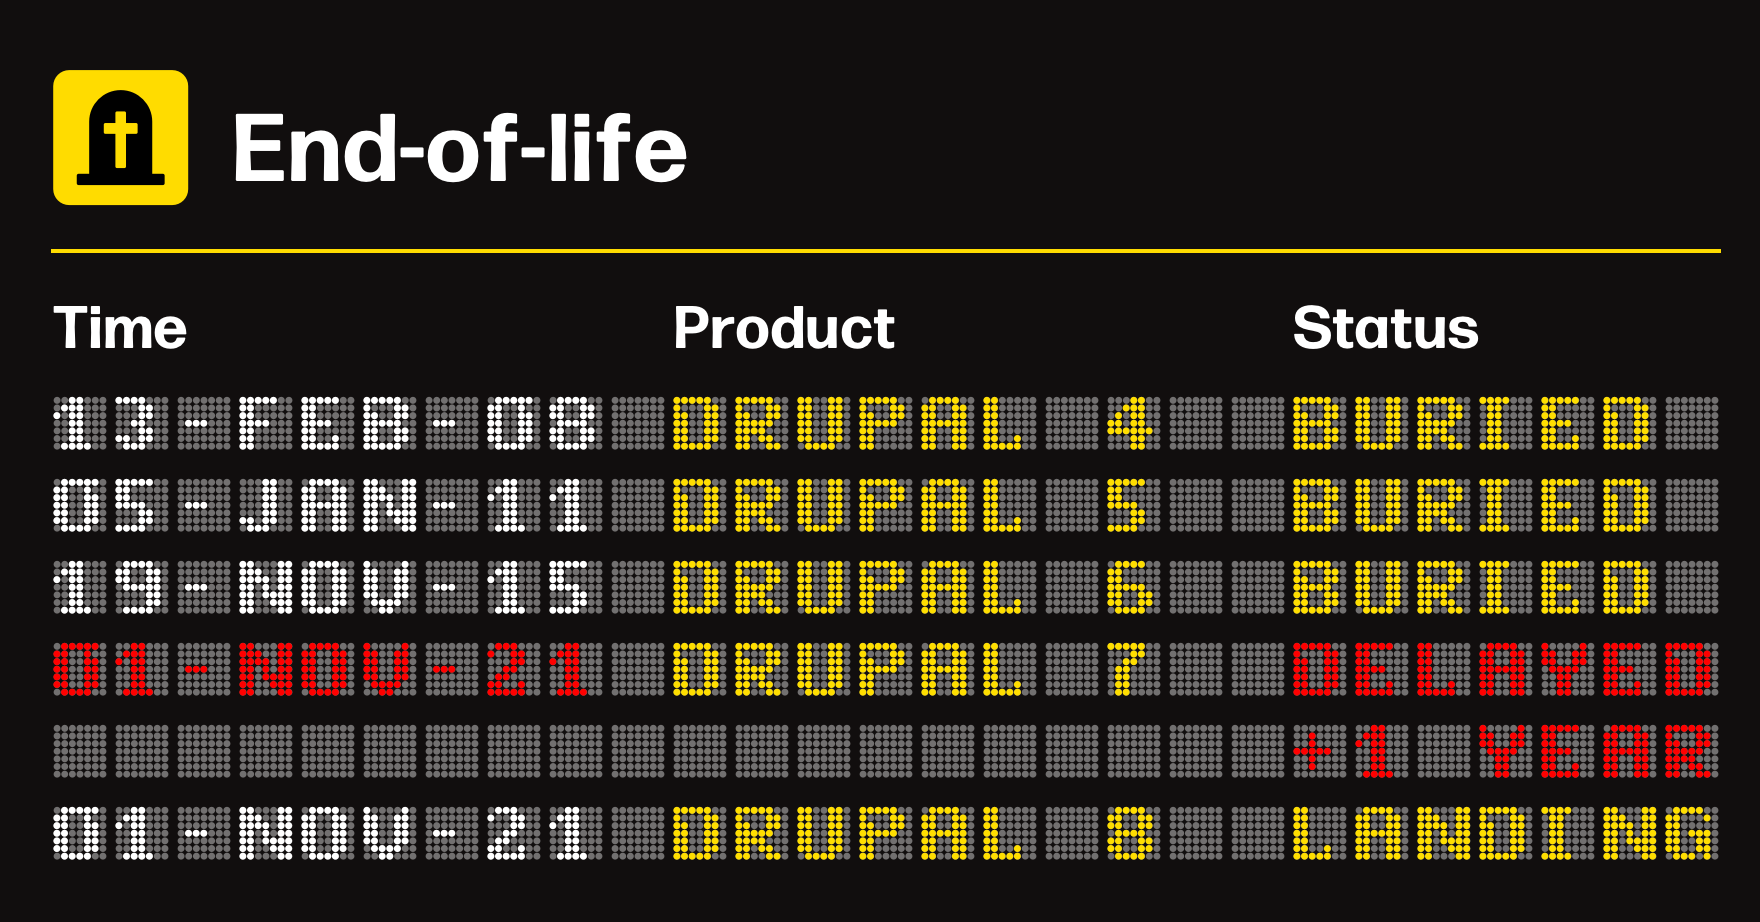 Tijdsschema van end-of-life Drupal 4, 5, 6, 7 en 8